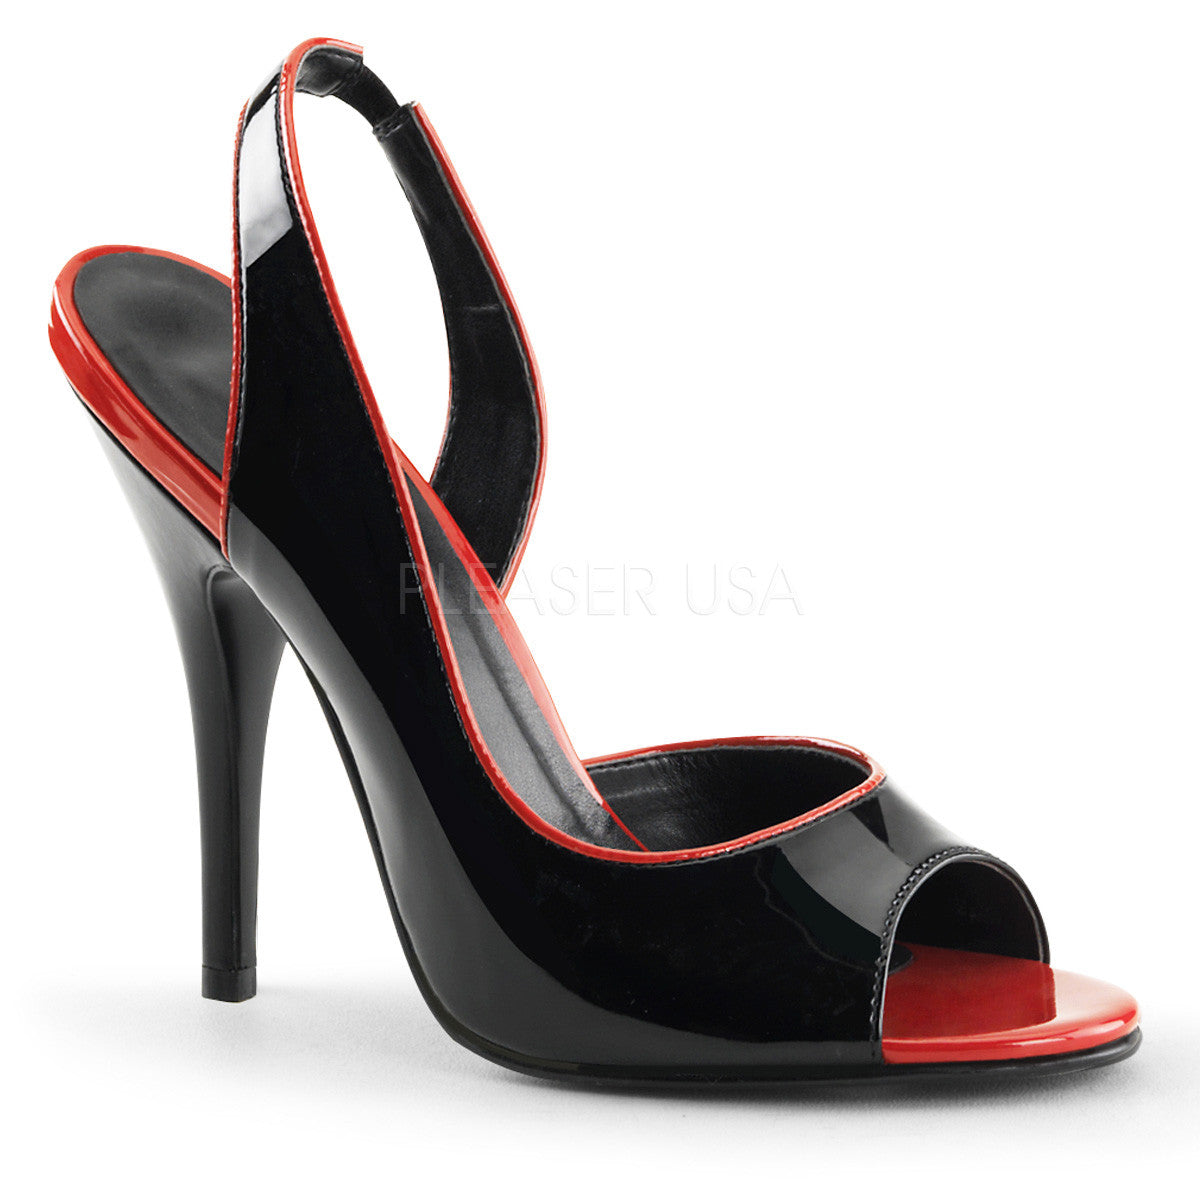 Pleaser SEDUCE-117 Black-Red Patent Sling Back Sandals - Shoecup.com